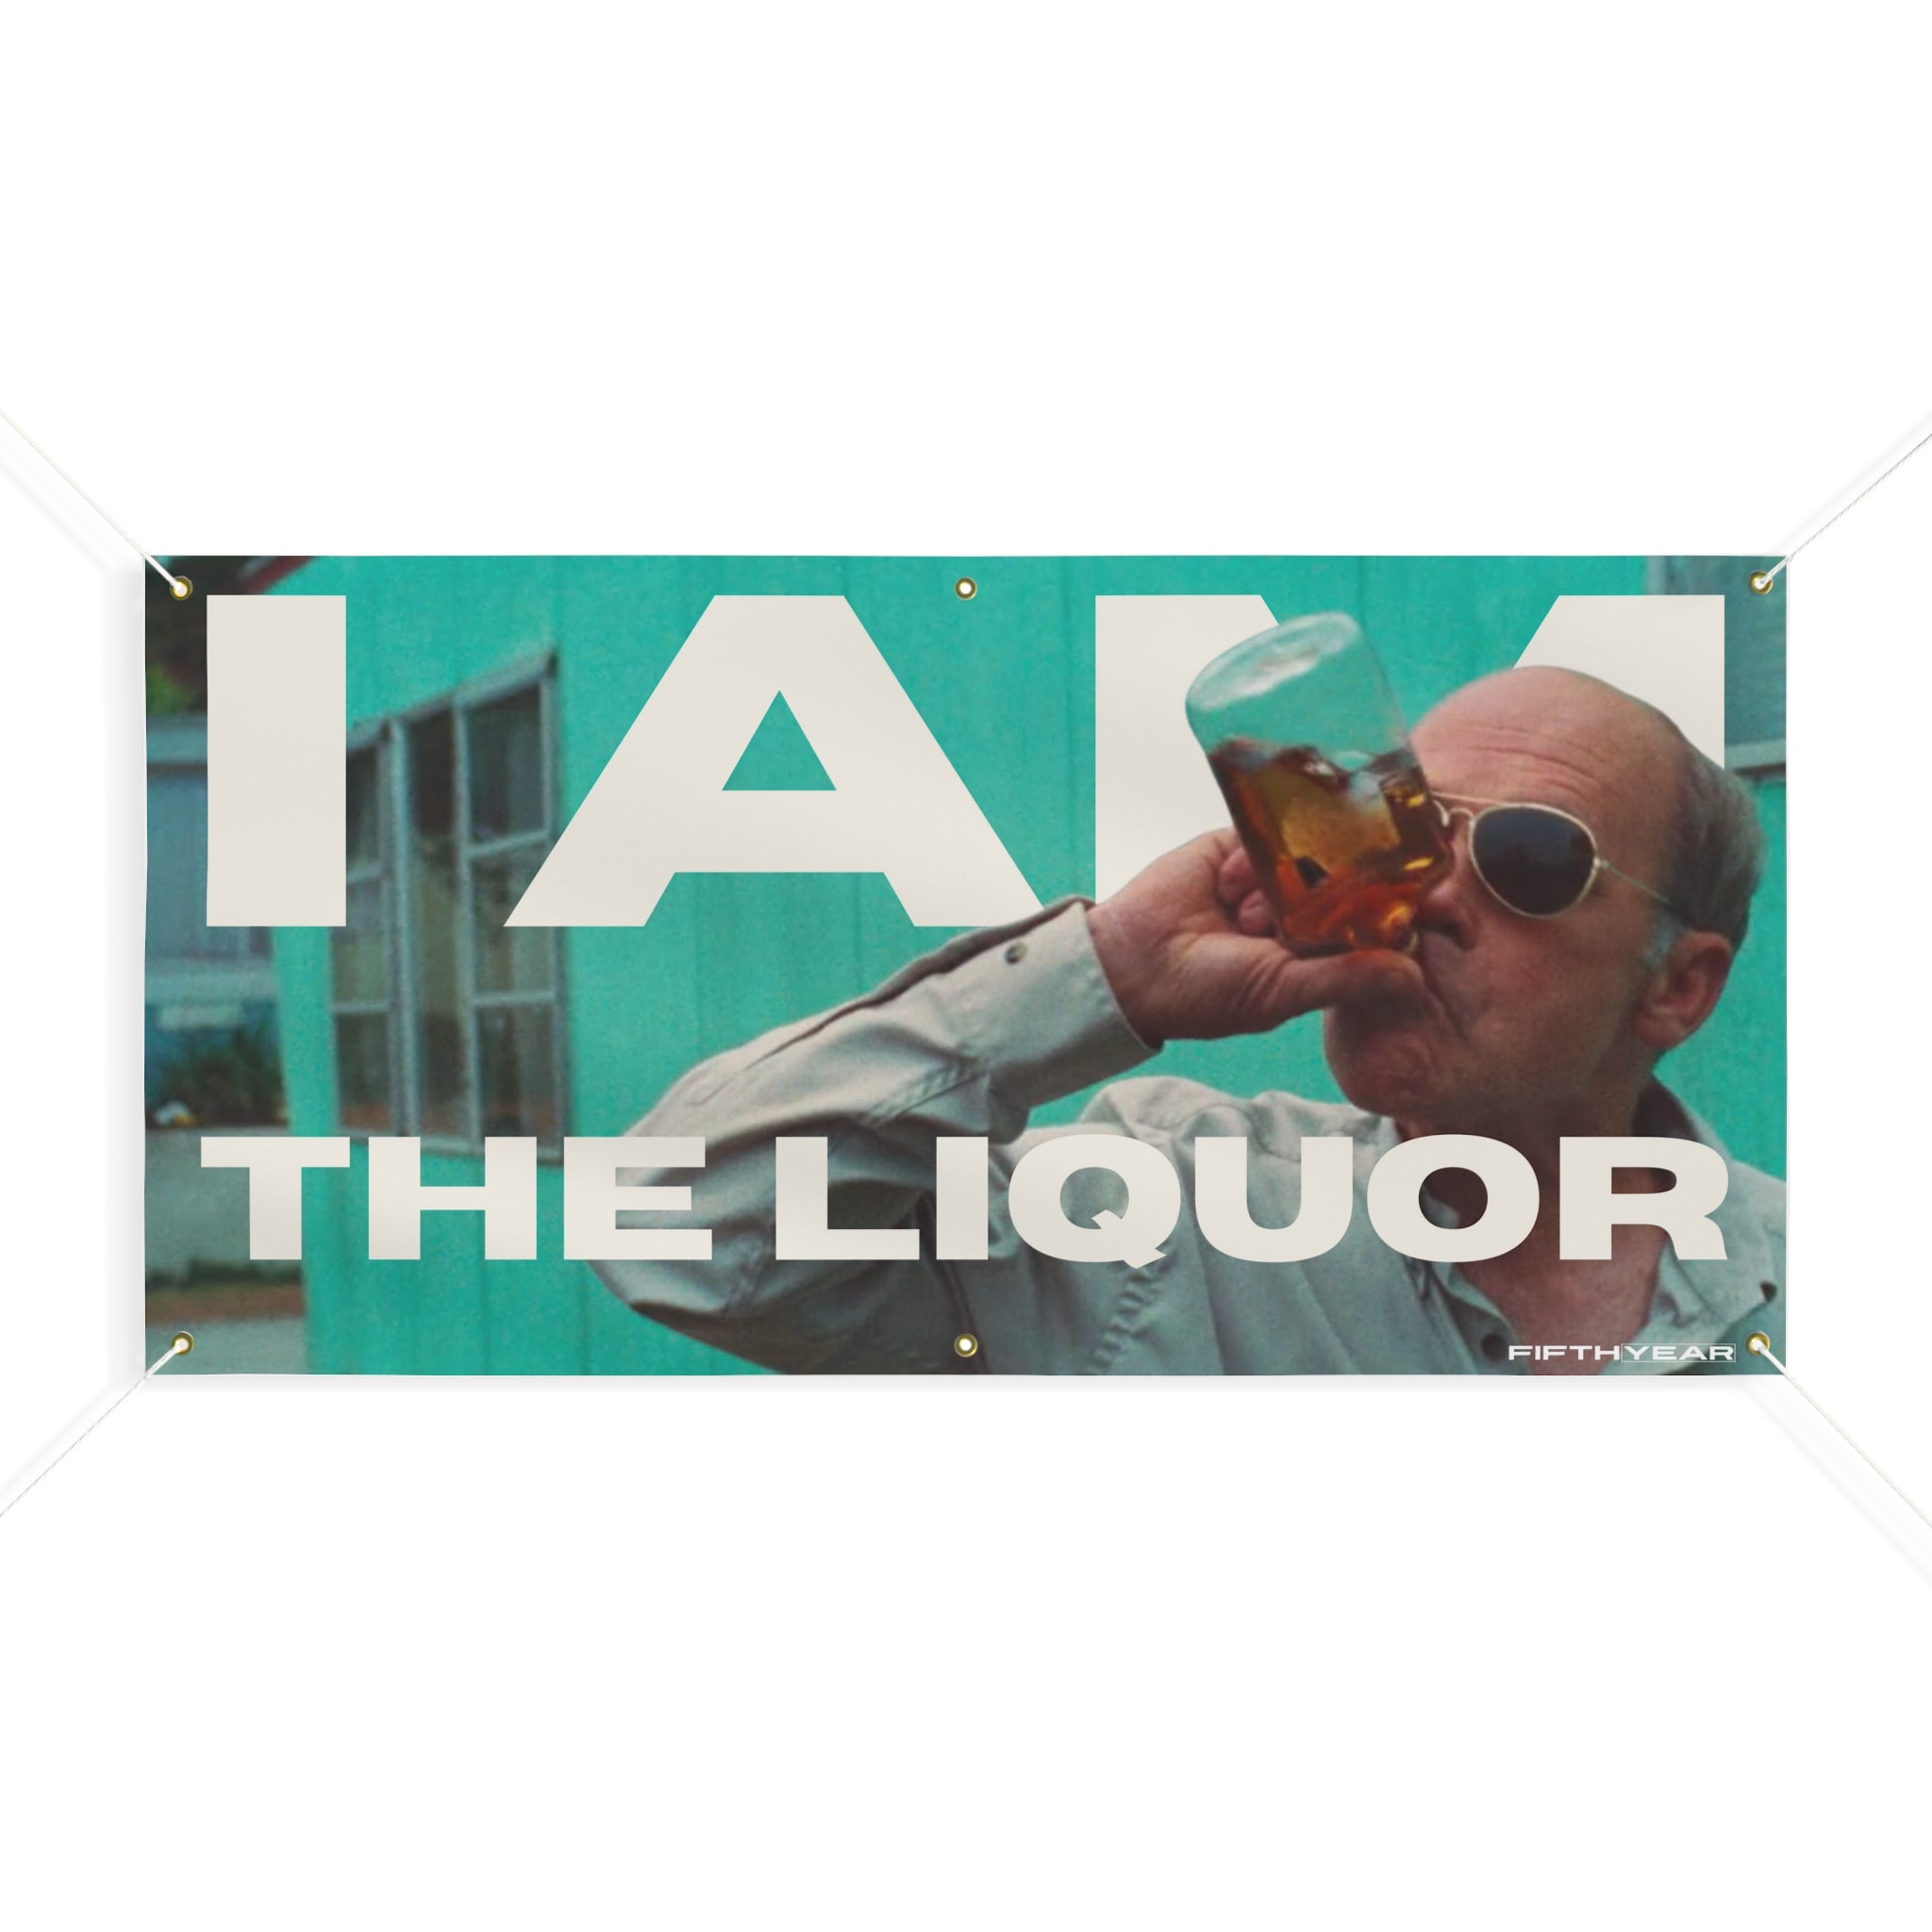 Mr Lahey Trailer Park Boys "I am the Liquor" - Flag